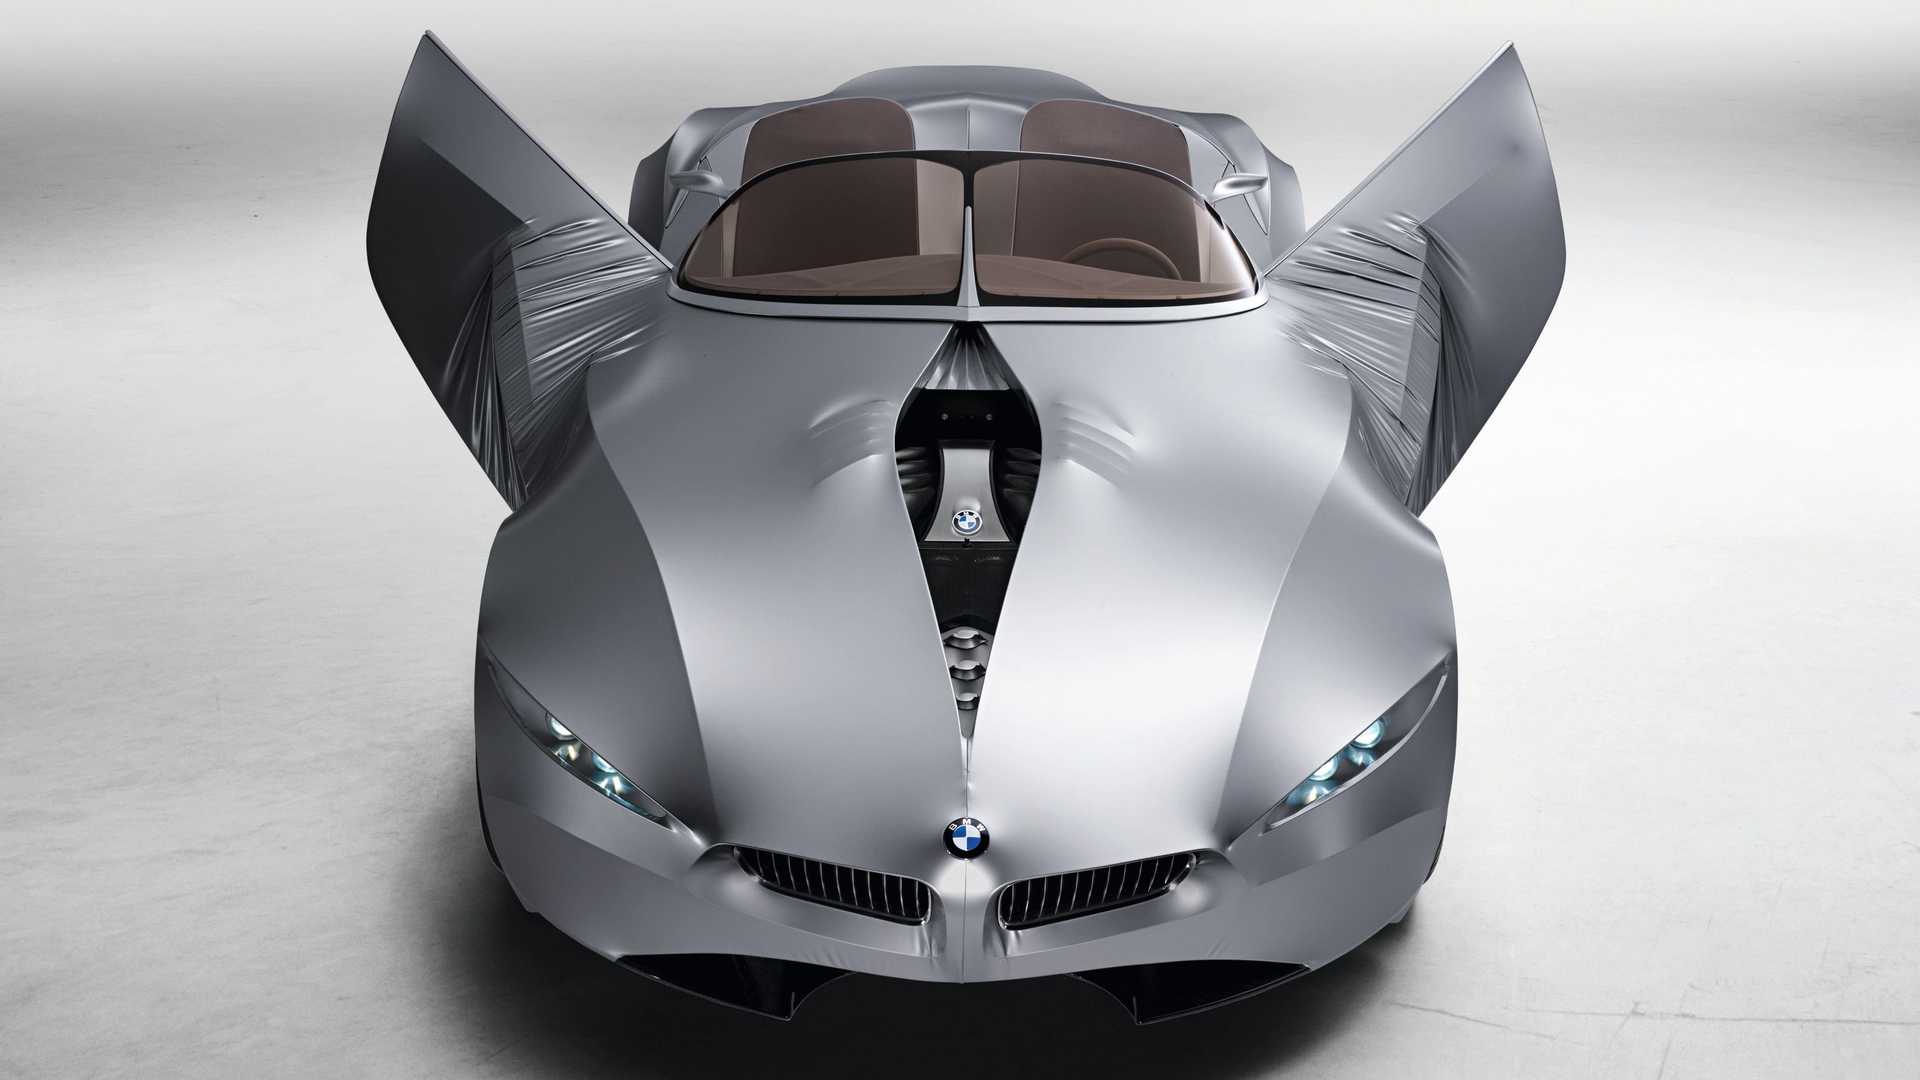 نمای کاپوت خودروی مفهومی روباز بی ام و گینا / BMW GINA concept convertible